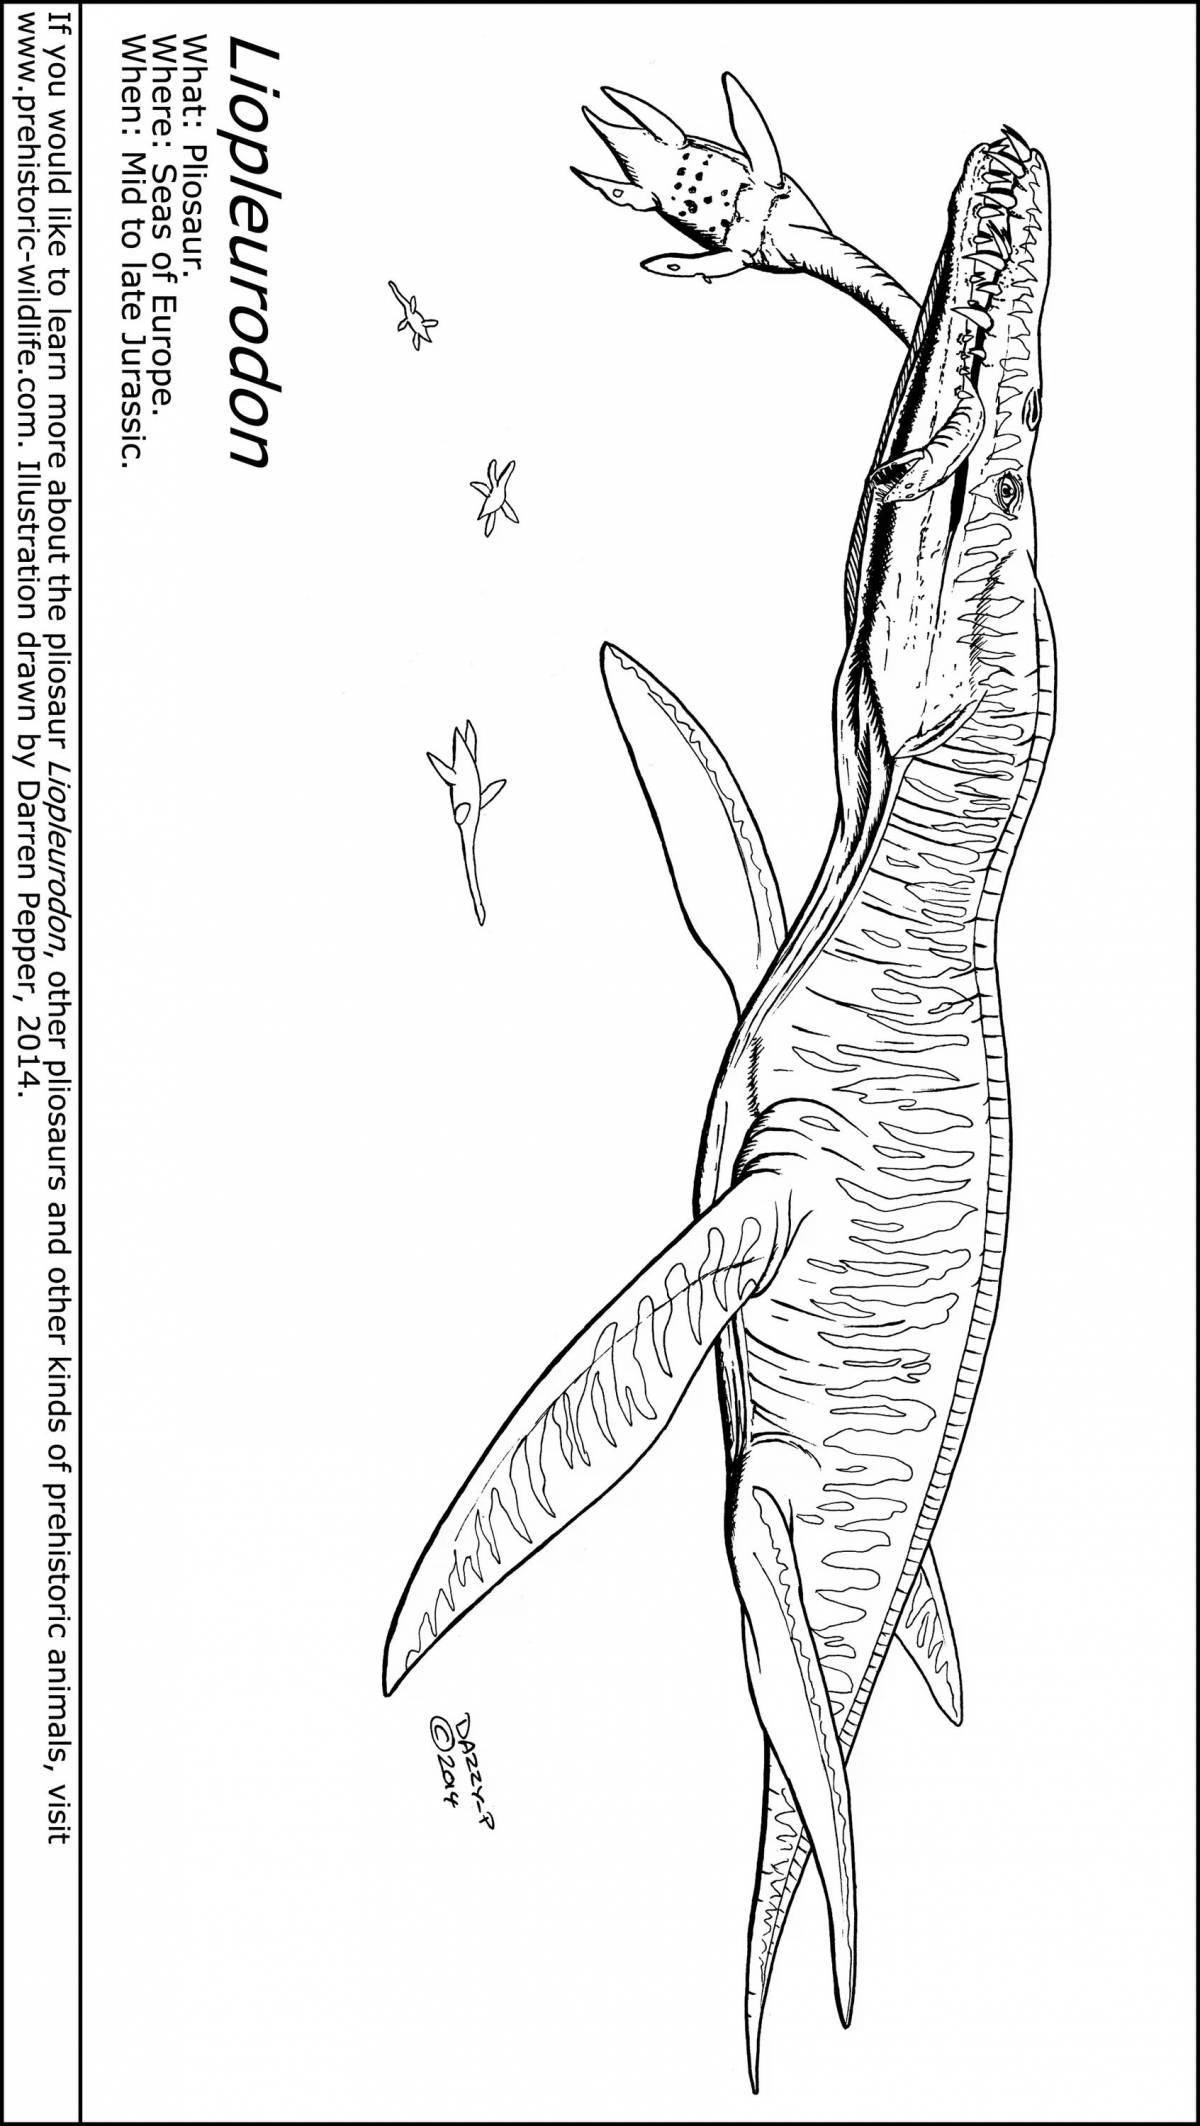 Fun Mosasaurus coloring book for kids